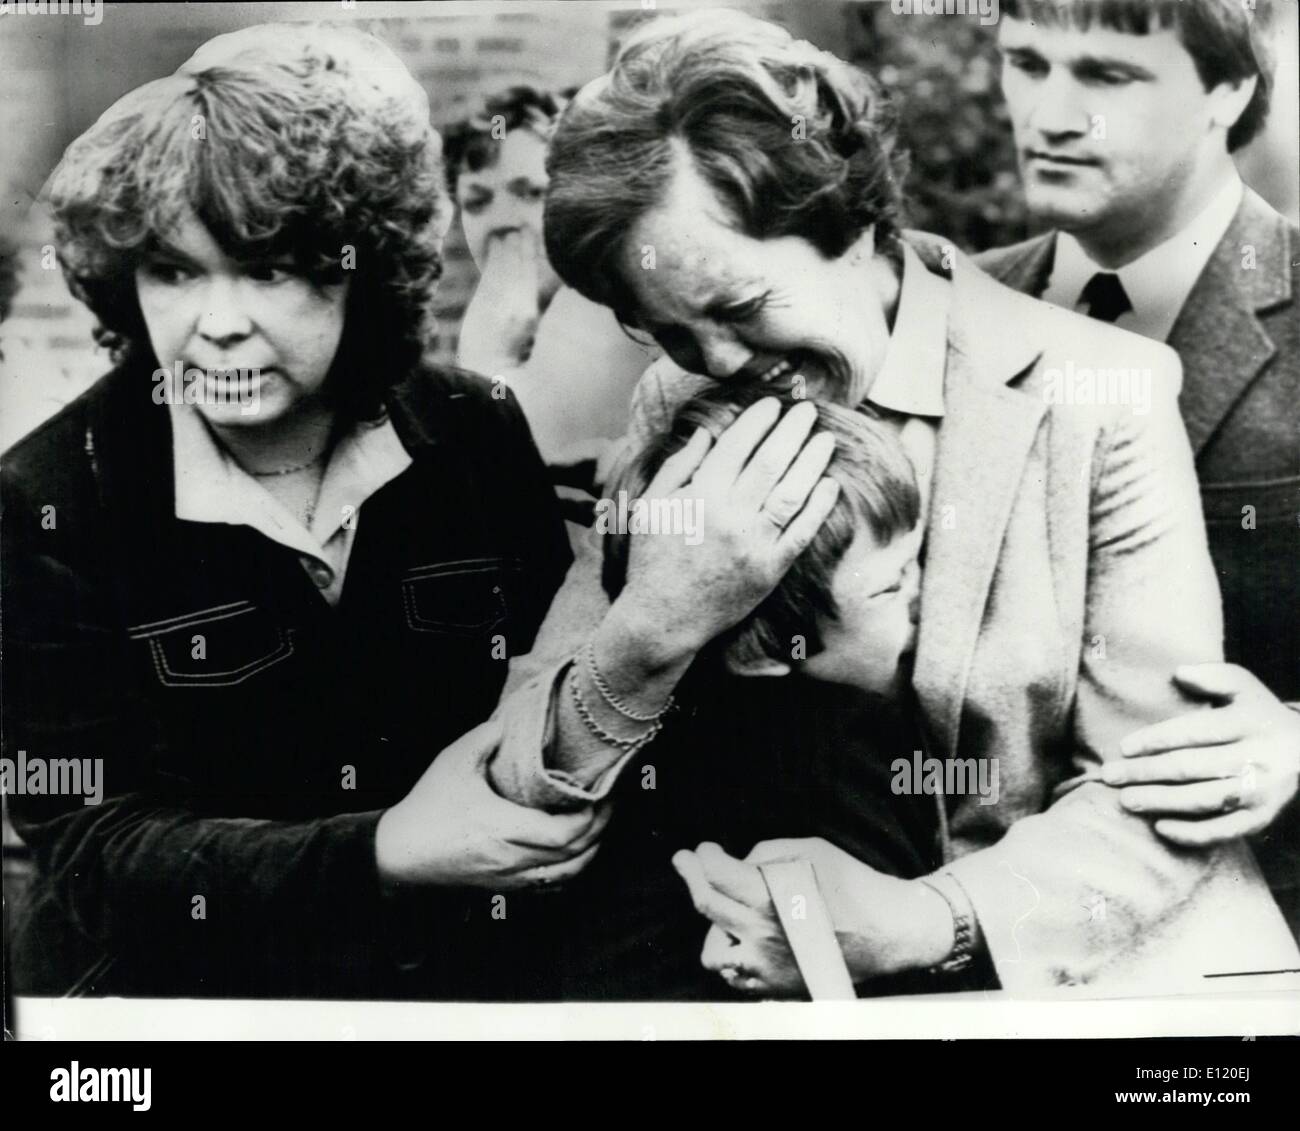 Mai 05, 1981 - L'angoisse d'une mère : Puisque la violence se poursuit en Irlande l'angoisse présente sur le visage d'une mère à l'enterrement d'une victime de l'ennuis. La mère de l'agent Garry Martin, 28, qui a été tué lorsqu'un lowry piégé a explosé à Belfast, console son frère de 9 ans Darren à l'enterrement. Banque D'Images